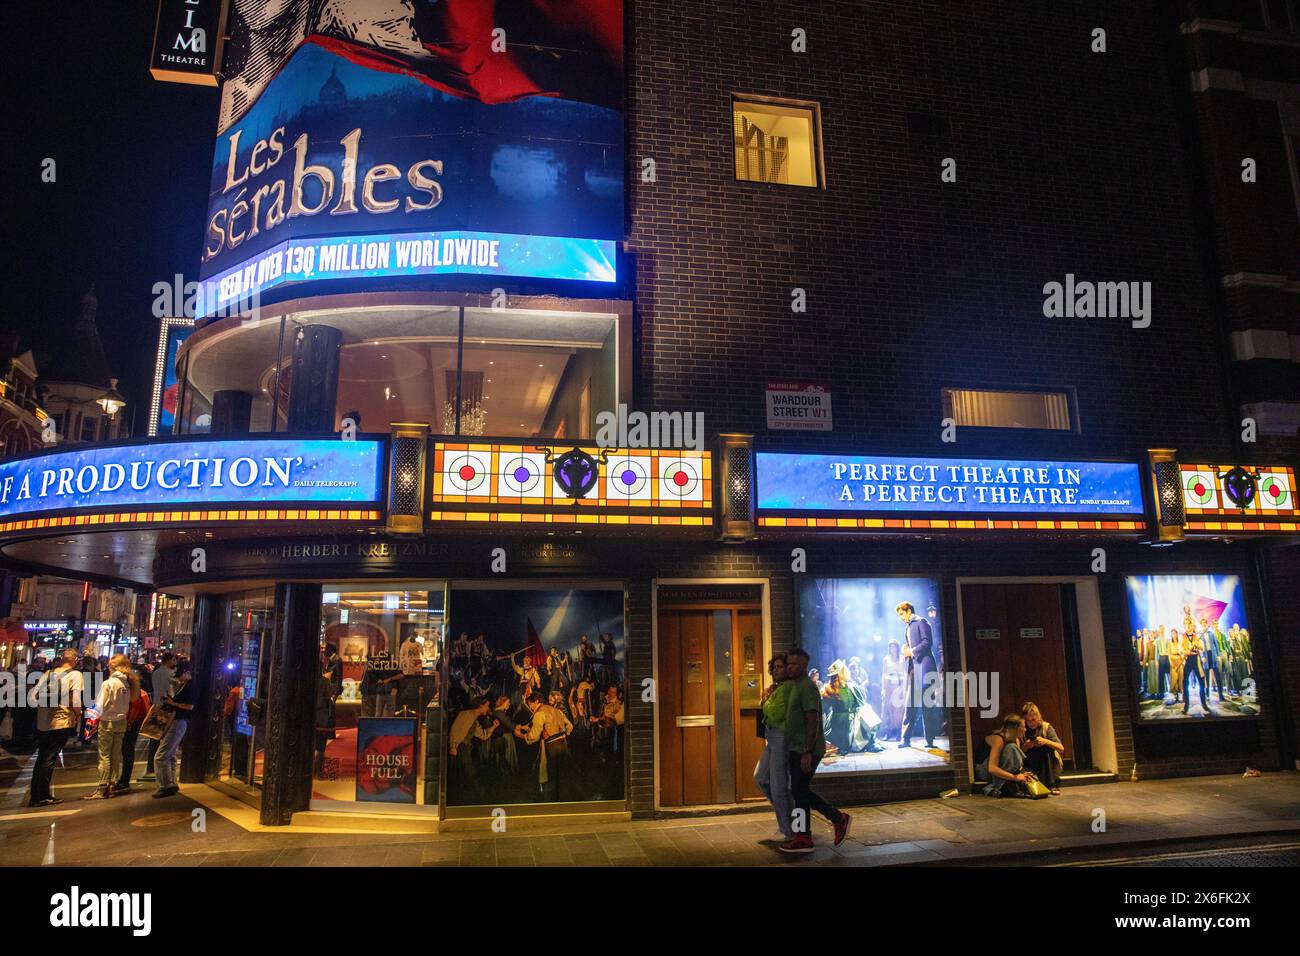 Production musicale les Misérables au théâtre de Sondheim dans le West End de Londres, soirée tournée avec des enseignes au néon, Londres, Angleterre, Royaume-Uni, 2023 Banque D'Images